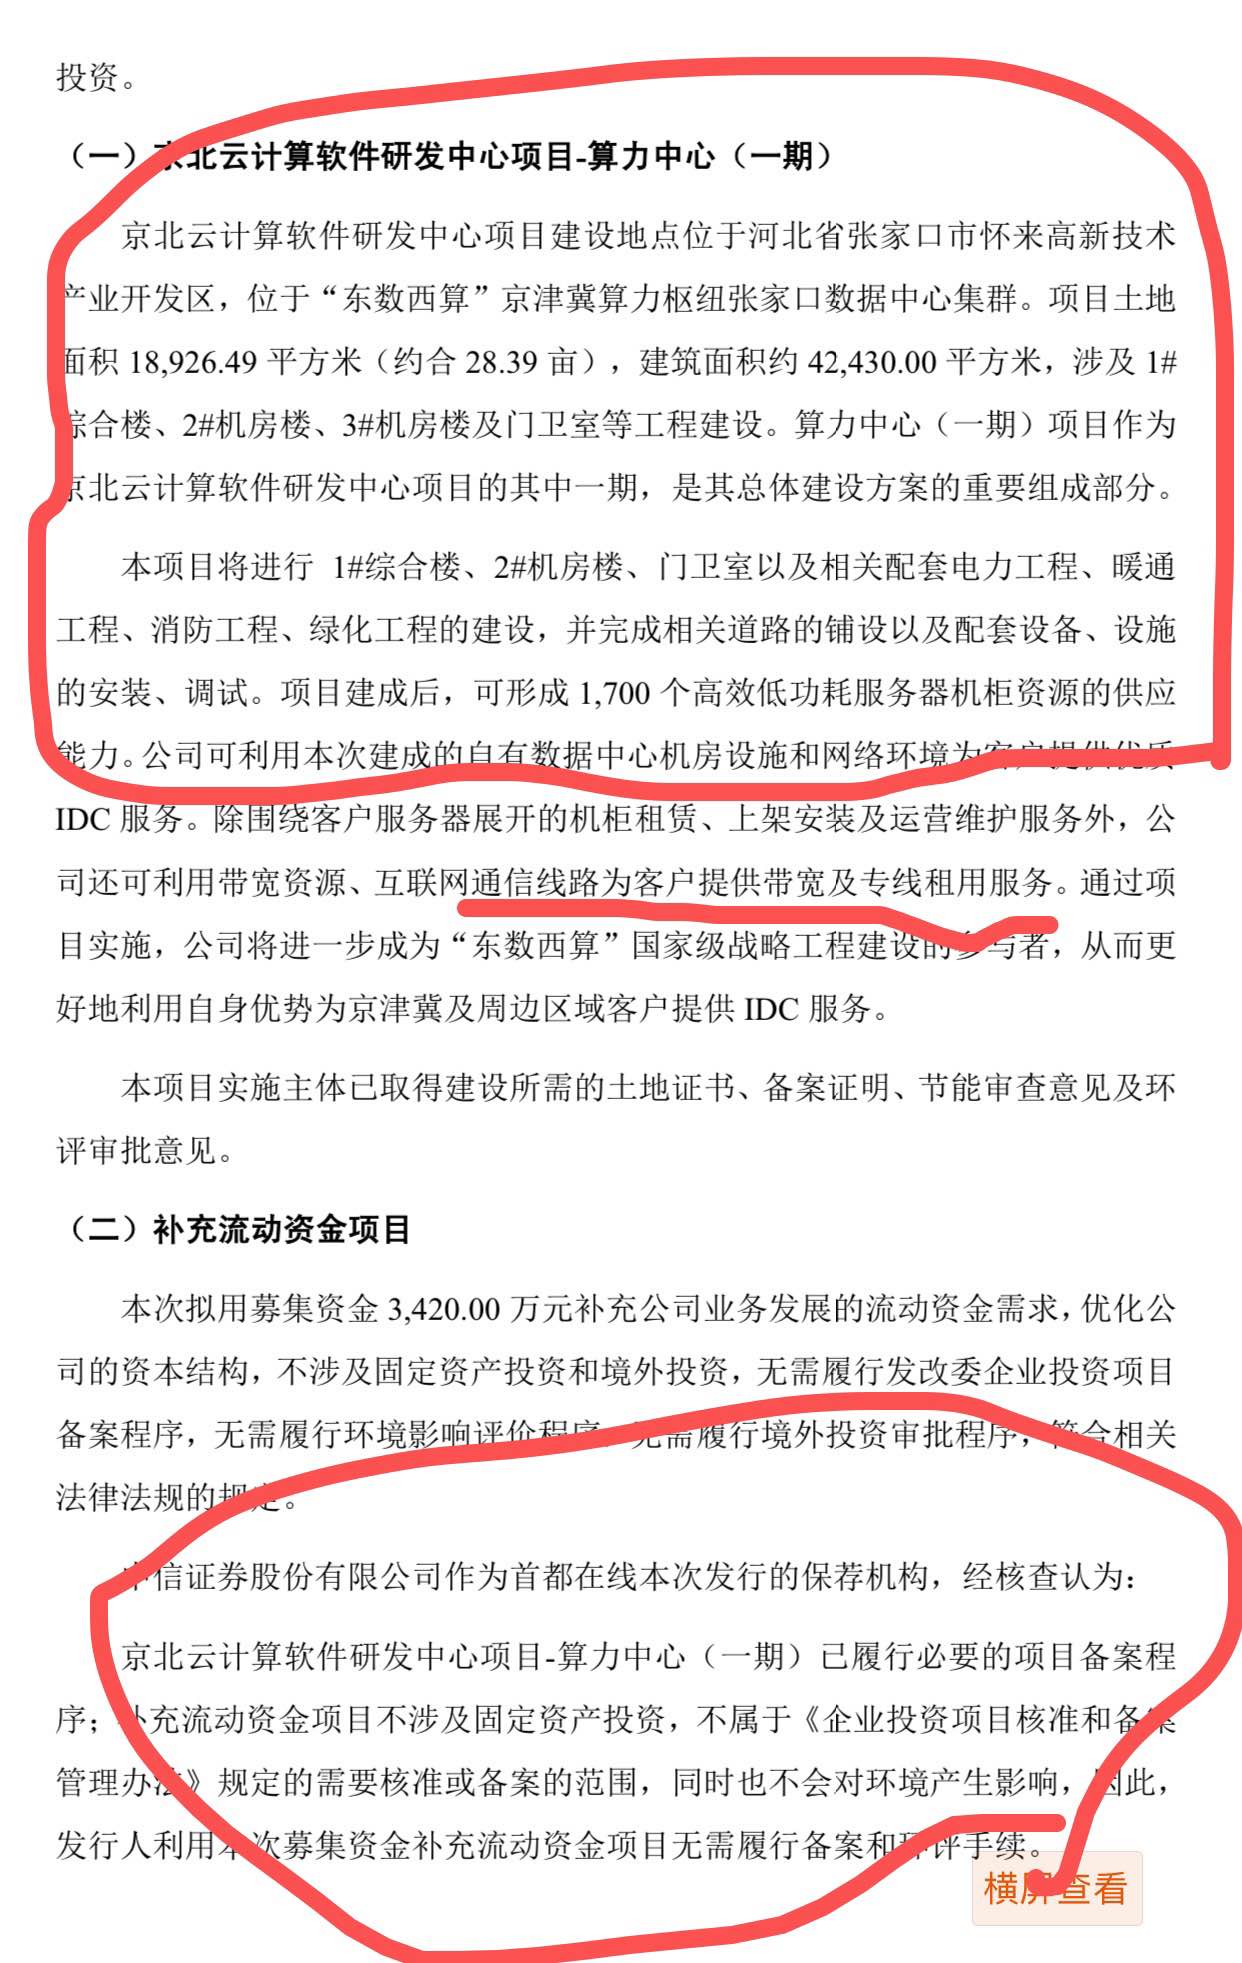 北京同有飞骥科技股份有限公司的简单介绍